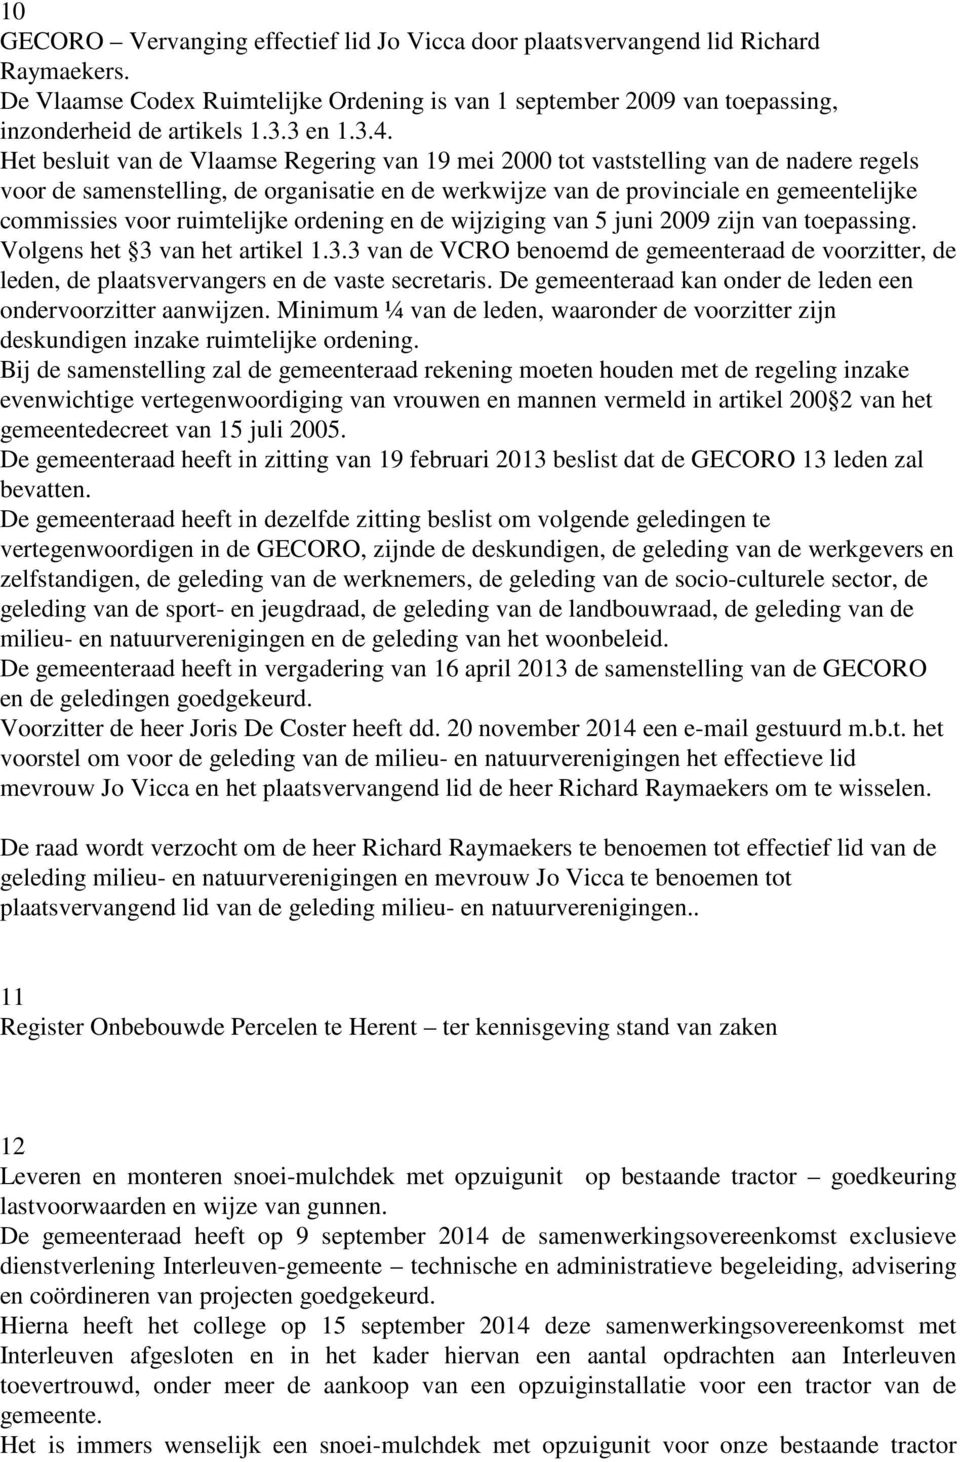 Het besluit van de Vlaamse Regering van 19 mei 2000 tot vaststelling van de nadere regels voor de samenstelling, de organisatie en de werkwijze van de provinciale en gemeentelijke commissies voor